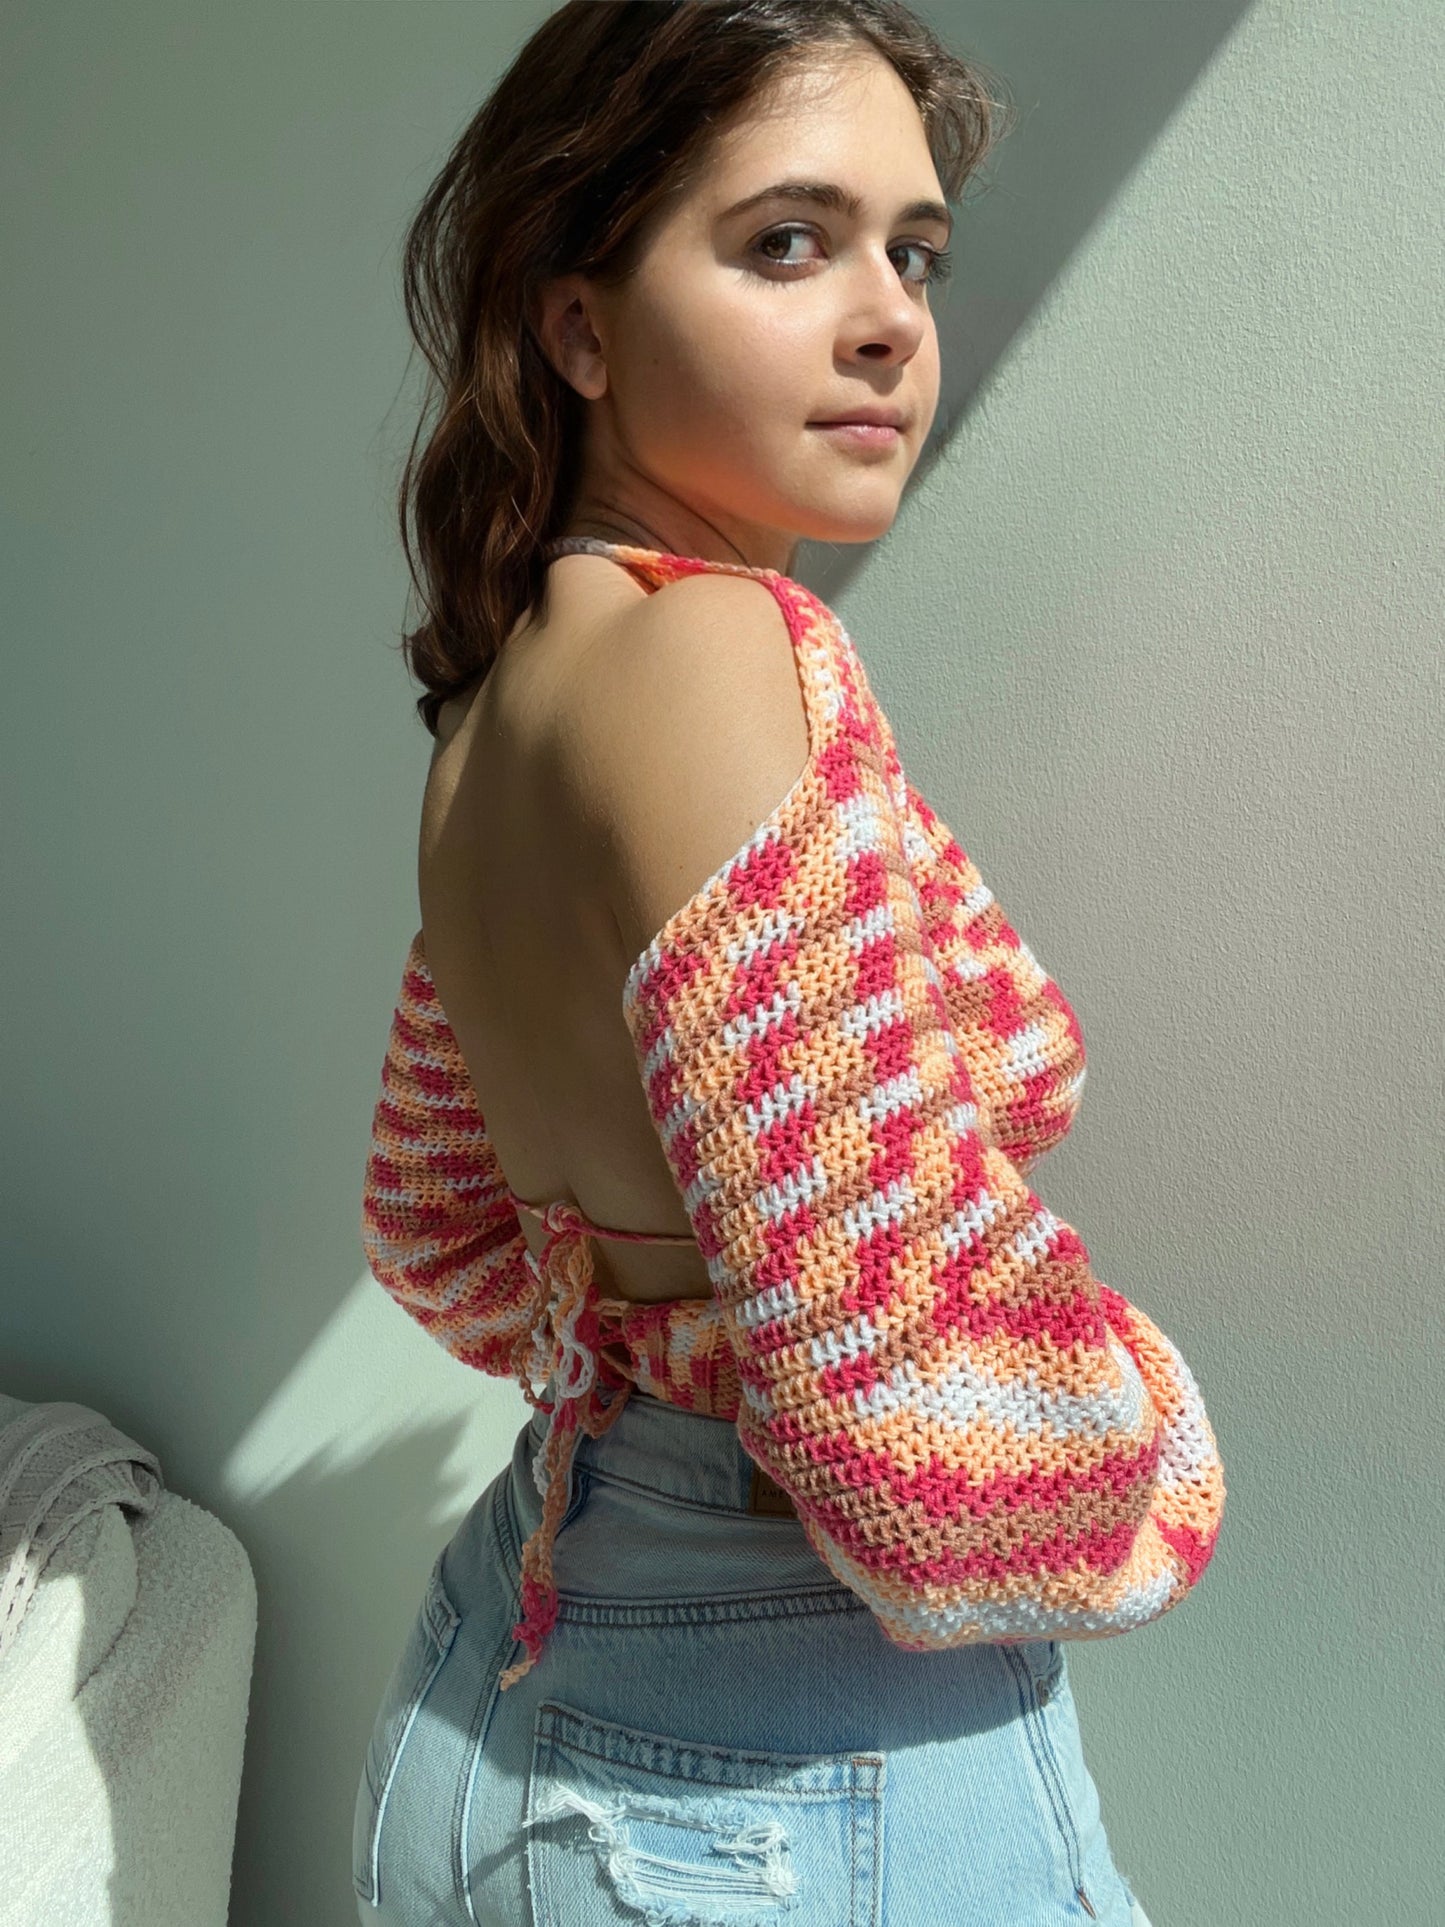 Kajana Top Crochet Pattern